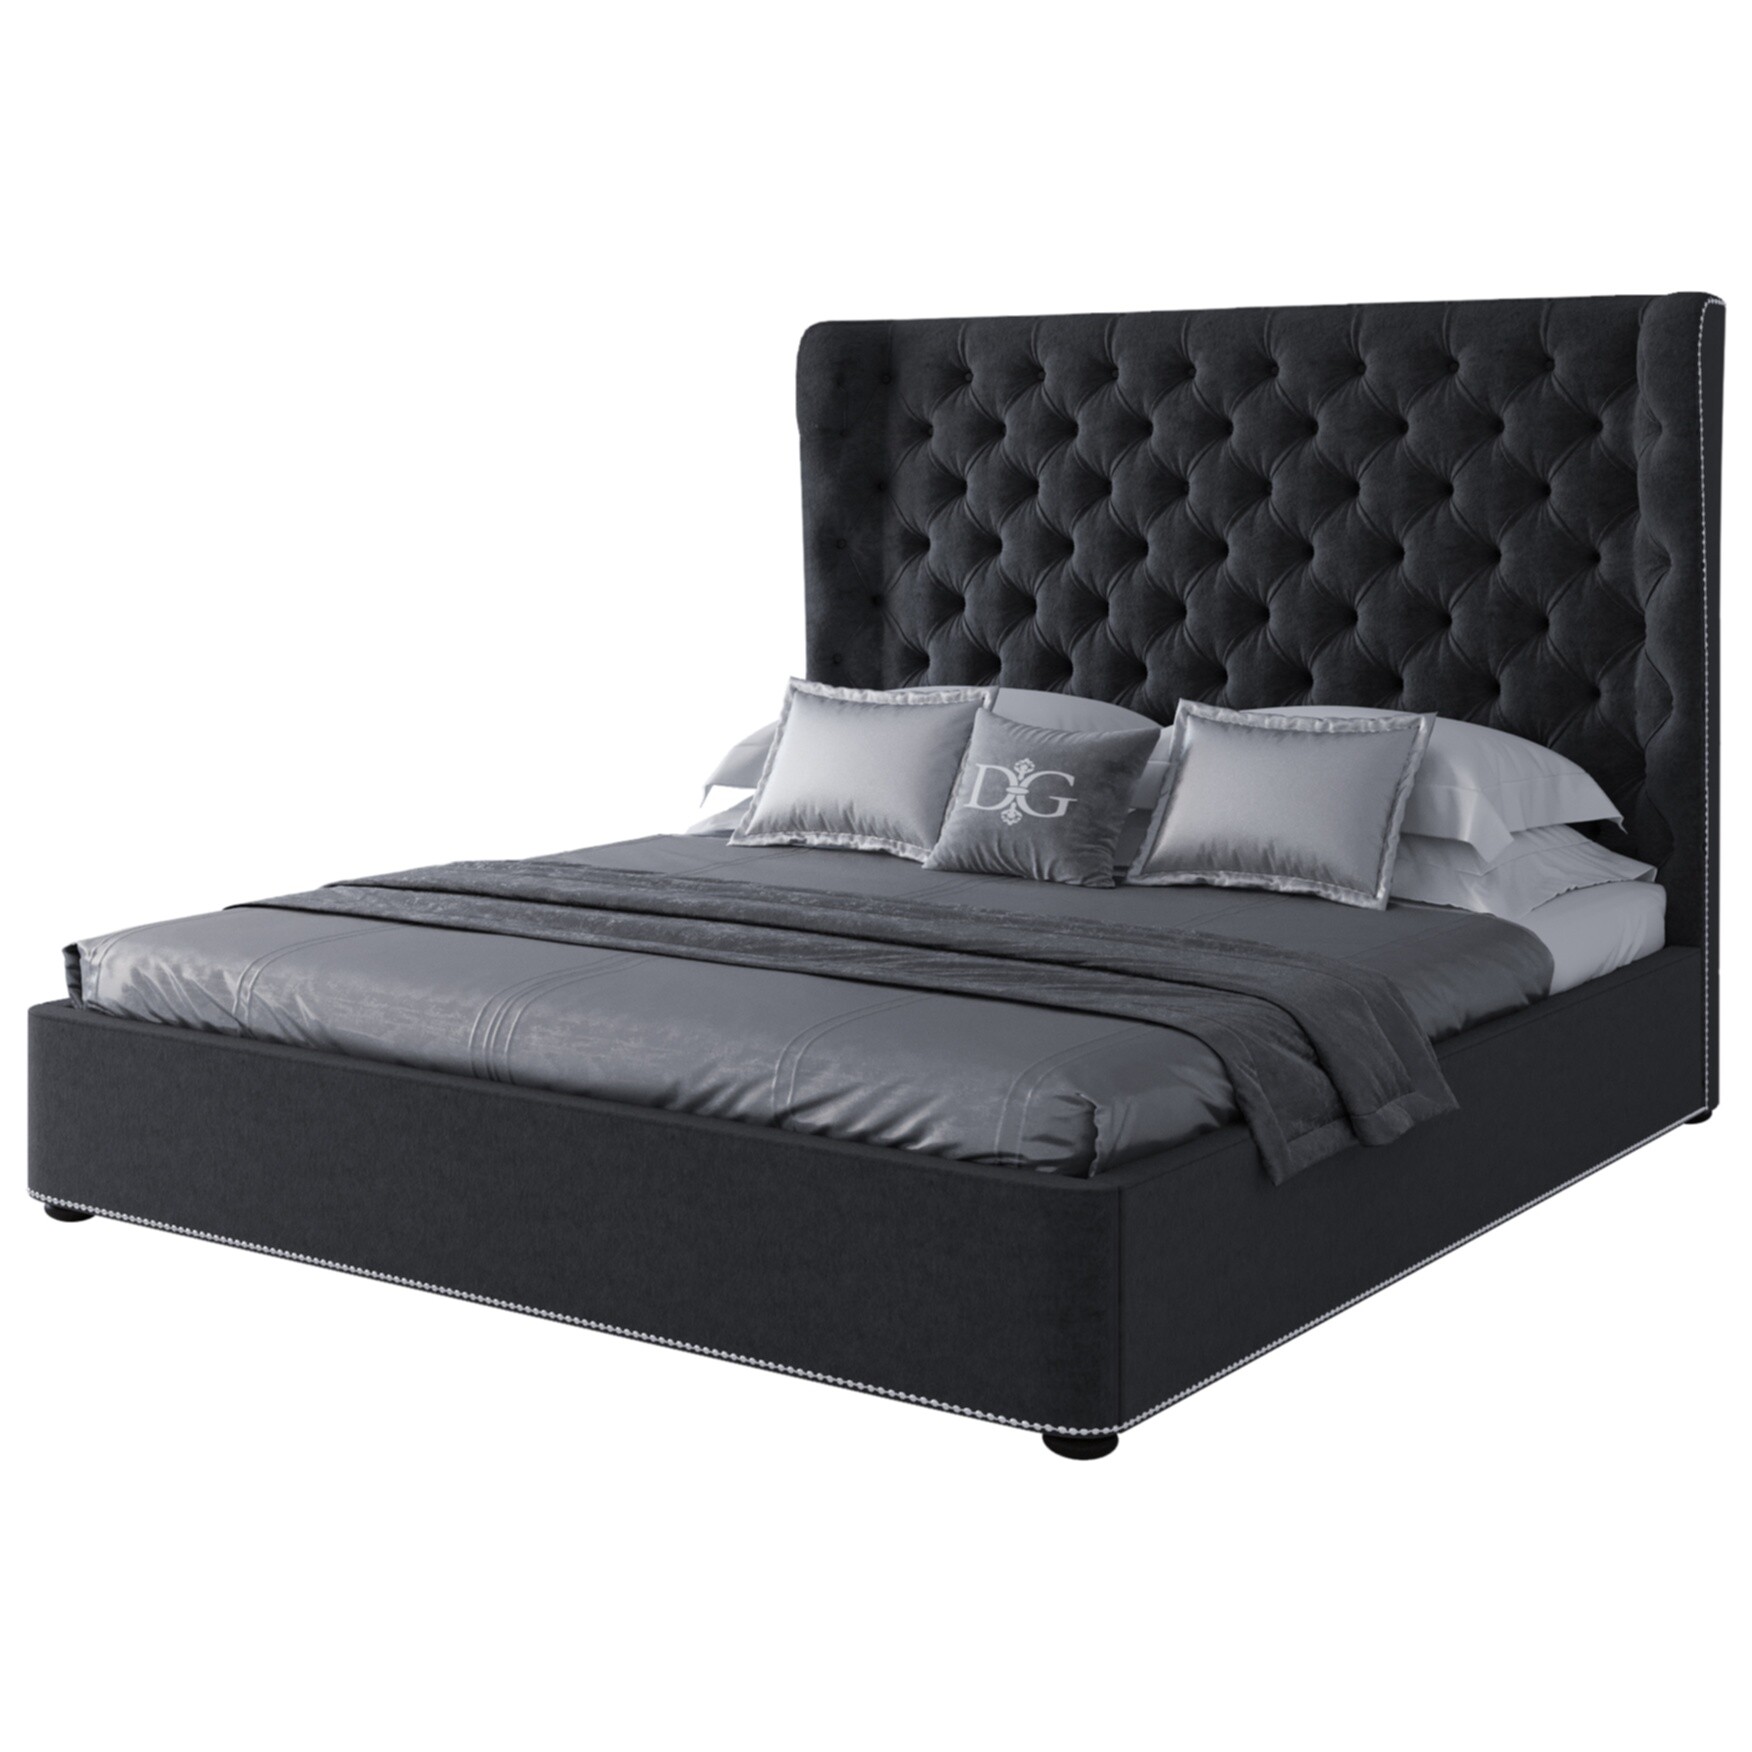 Кровать двуспальная с мягким изголовьем 180х200 см антрацит Henbord